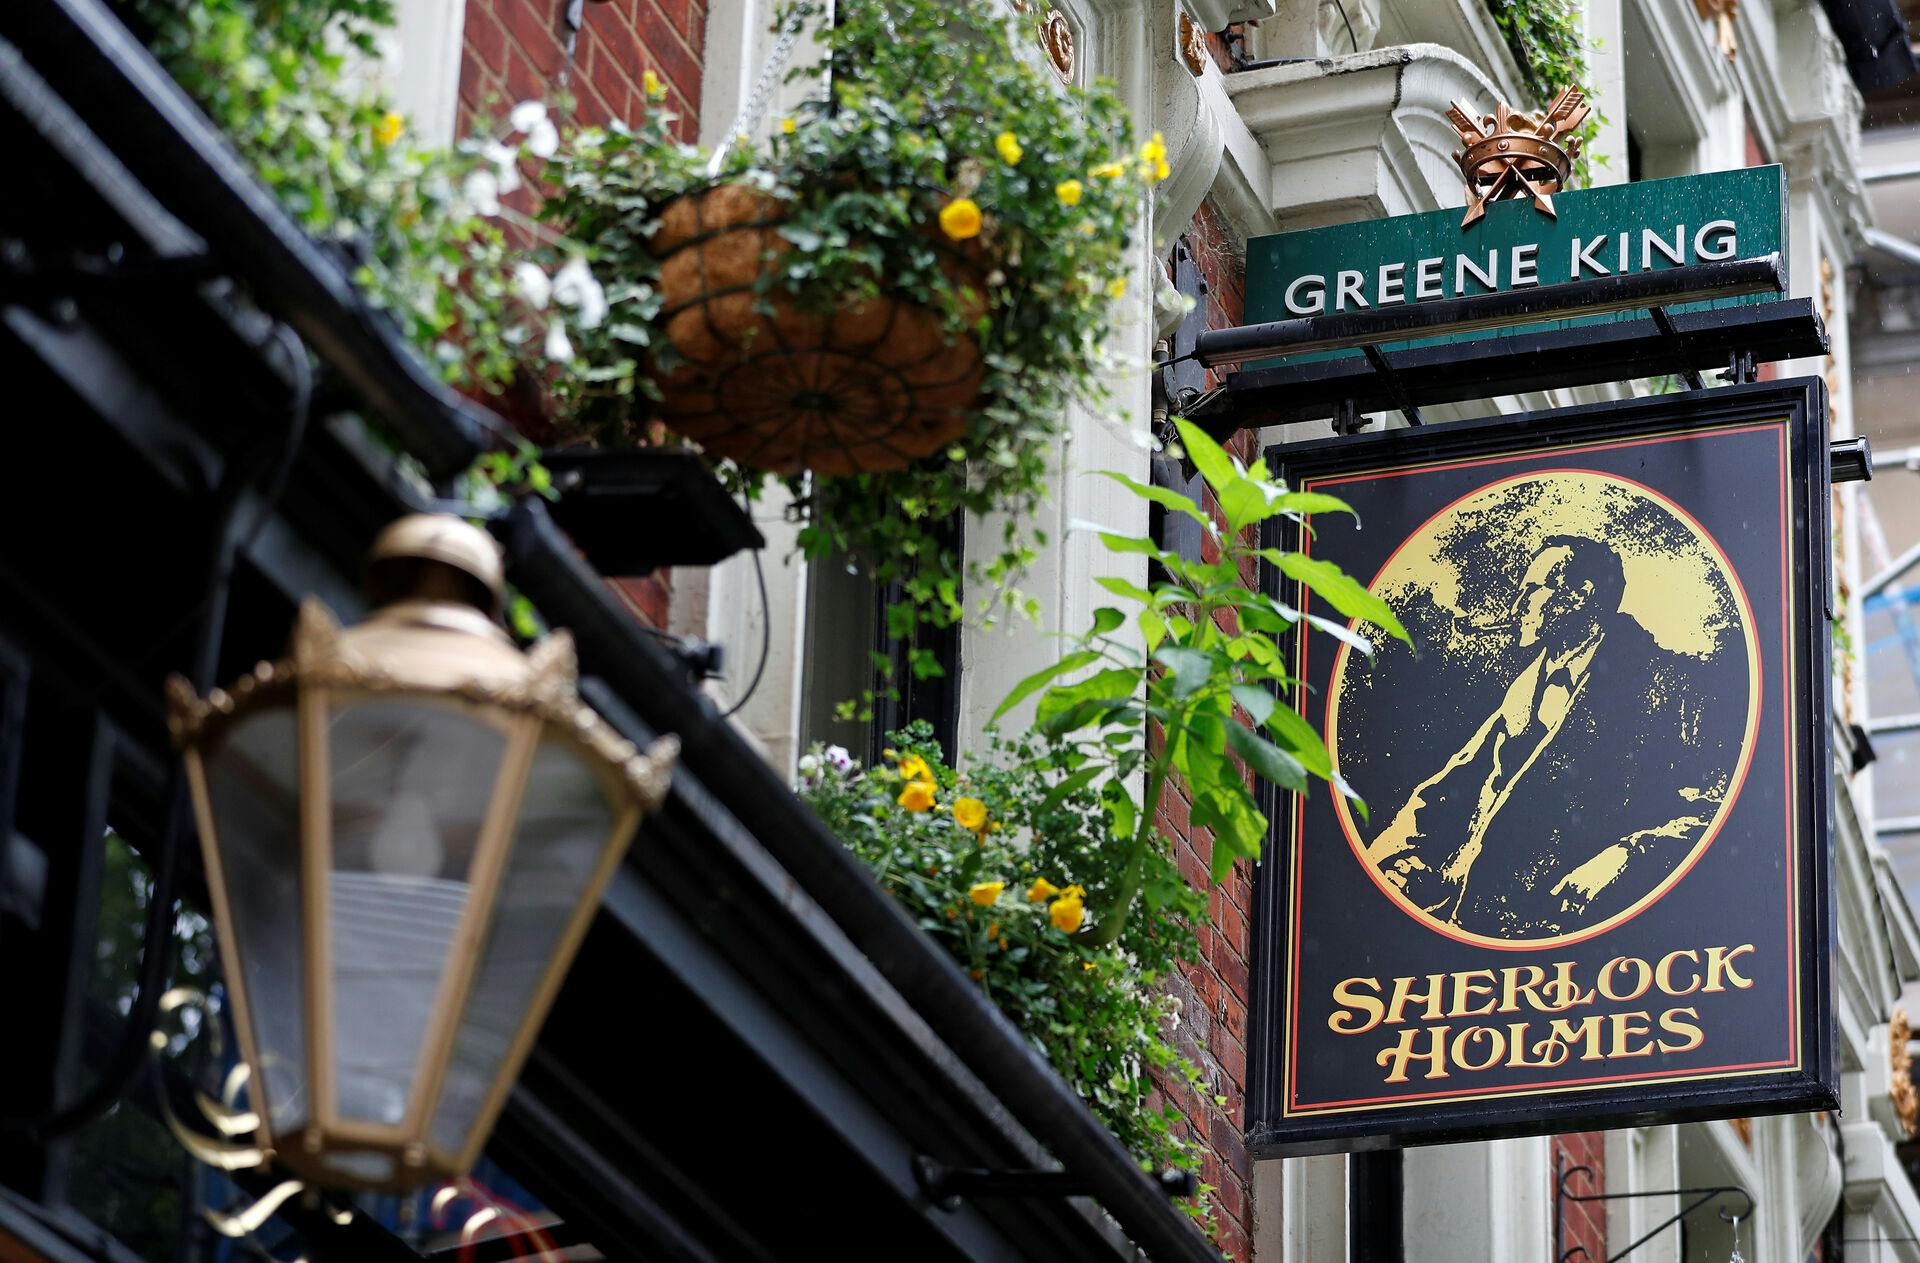 Sherlock Holmes Pub i Aarhus er gået konkurs. Der er dog stadig et spinkelt håb for fremtiden om, at der på samme adresse stadig kommer til at være en pub.